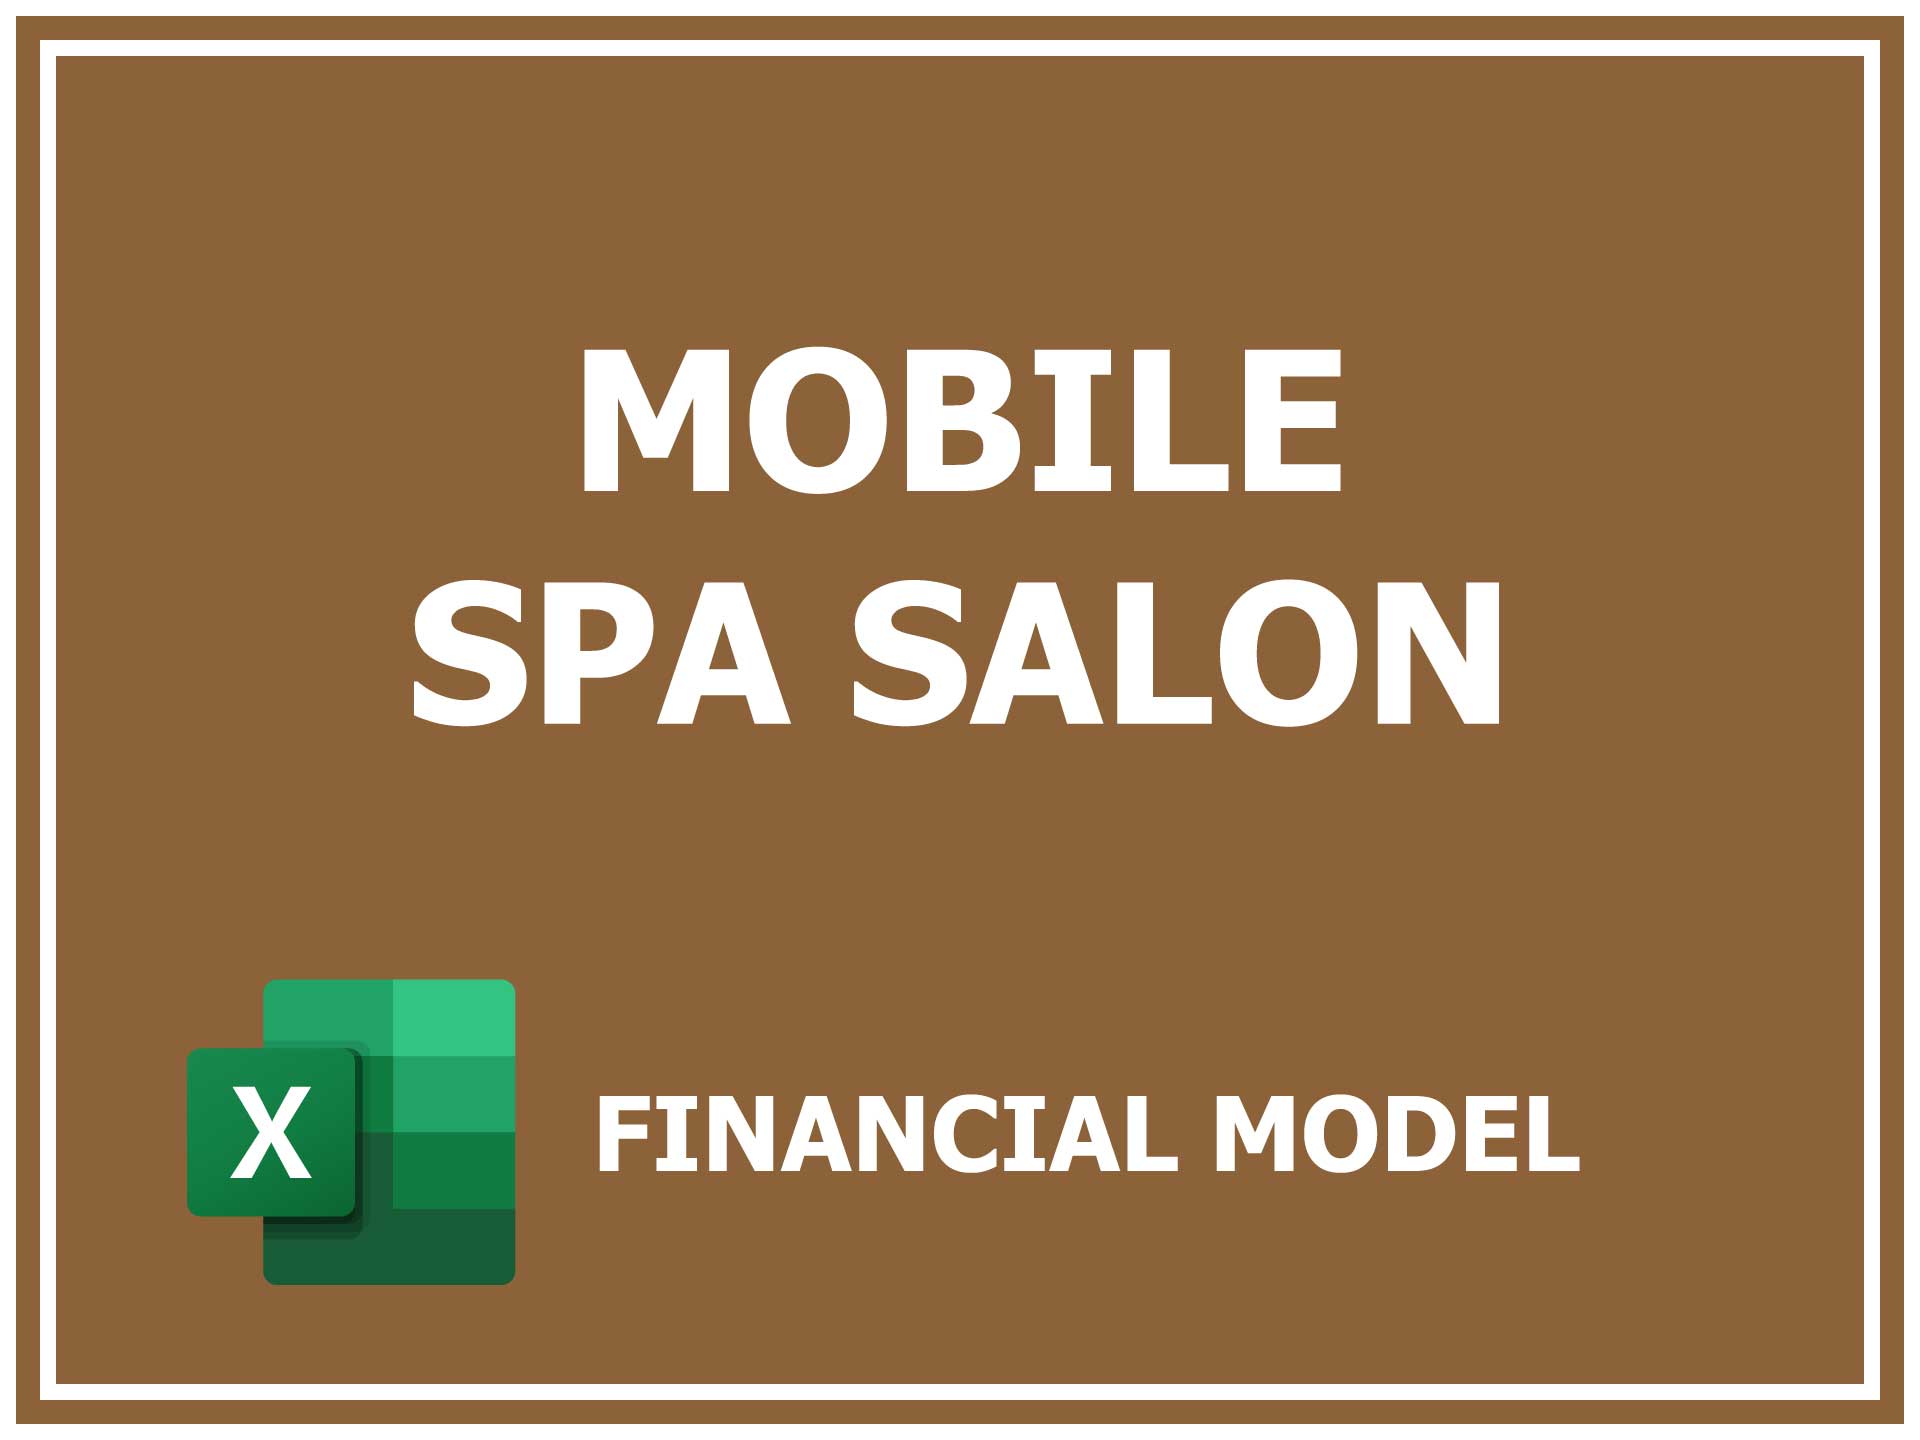 Mobile Spa Salon